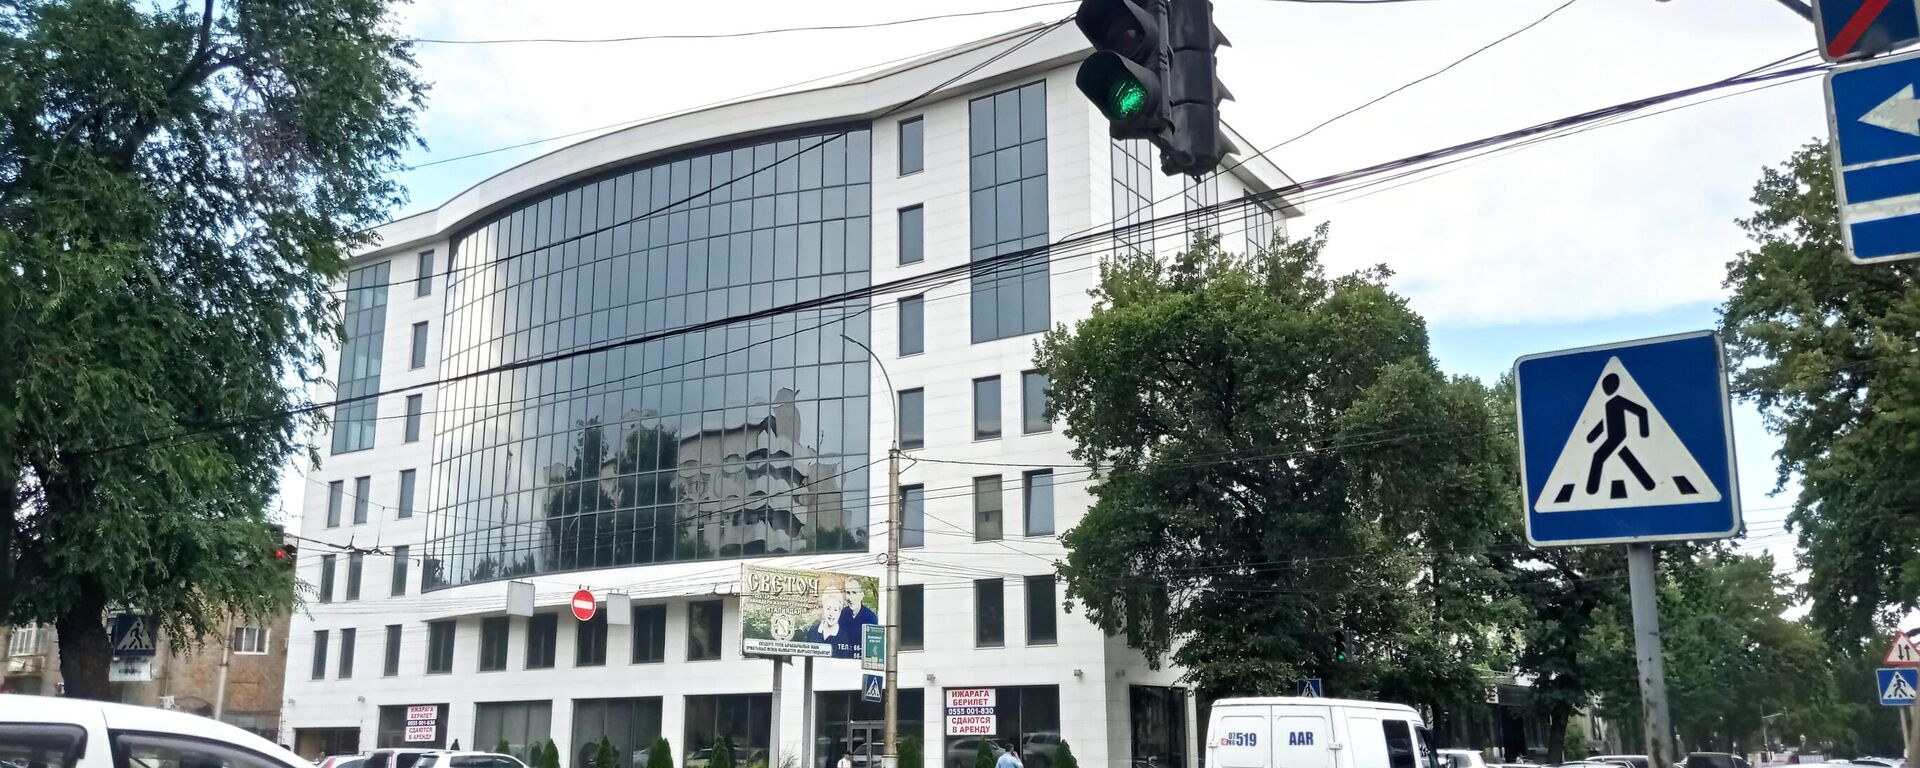 Новый офис Кумтор голд компани в Бишкеке - Sputnik Кыргызстан, 1920, 15.06.2022